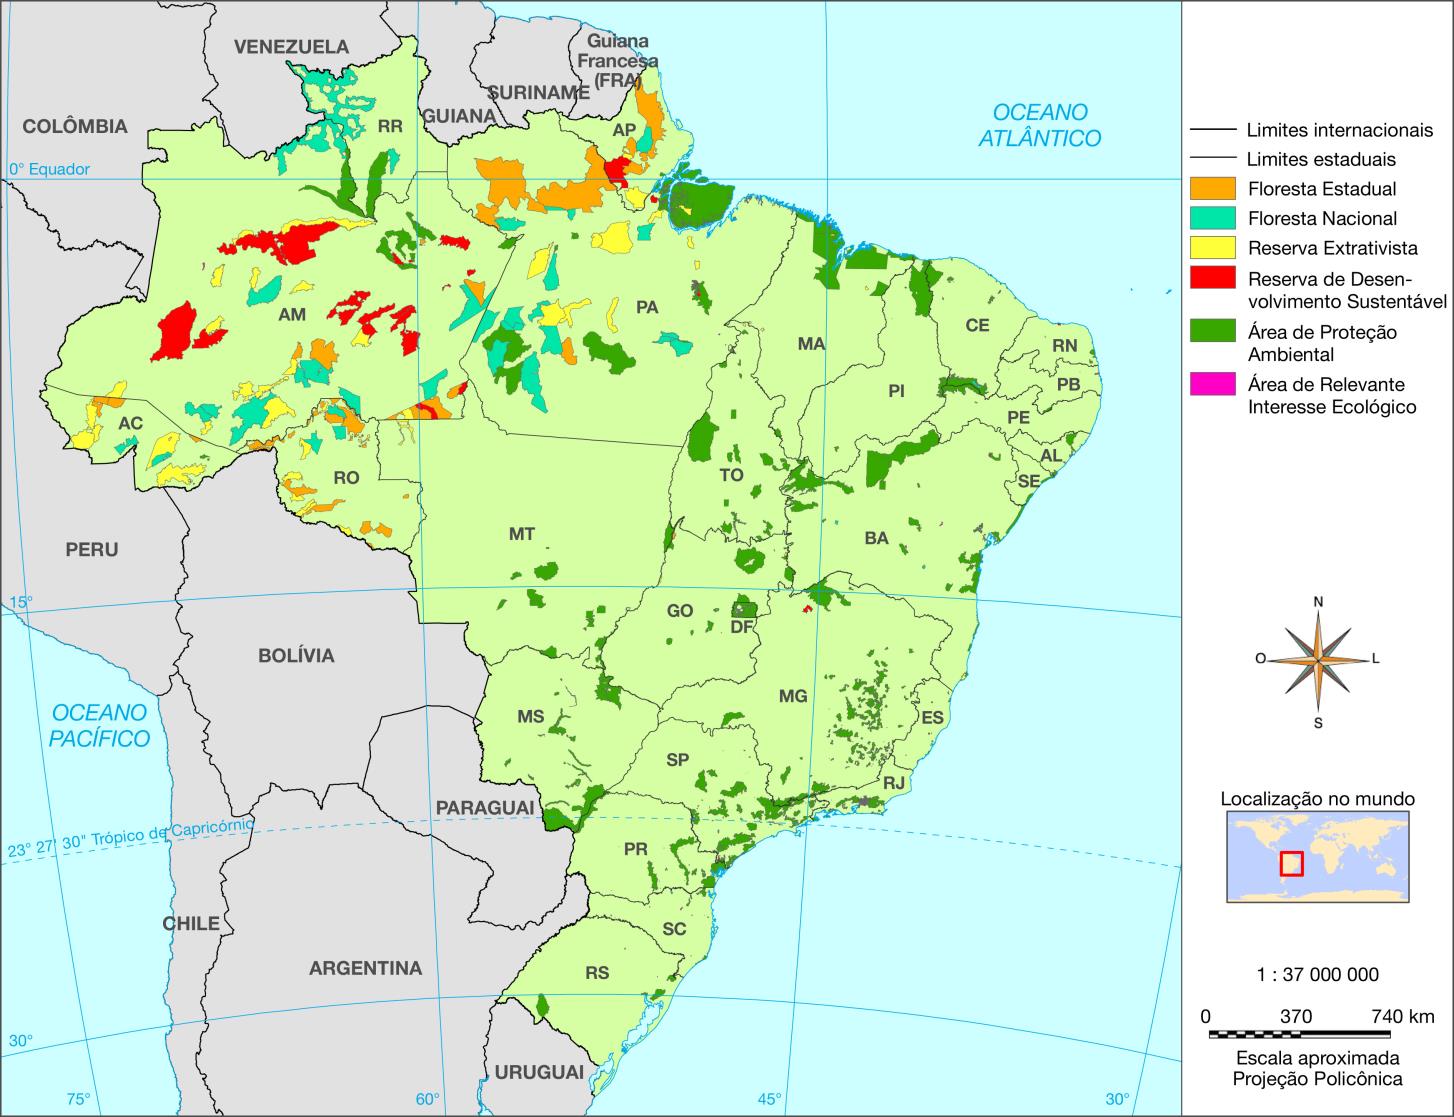 Unidades de conservação brasileiras: parques nacionais e áreas de proteção ambiental Luciano Daniel Tulio Mapa com escala calculada para a versão impressa do material didático.